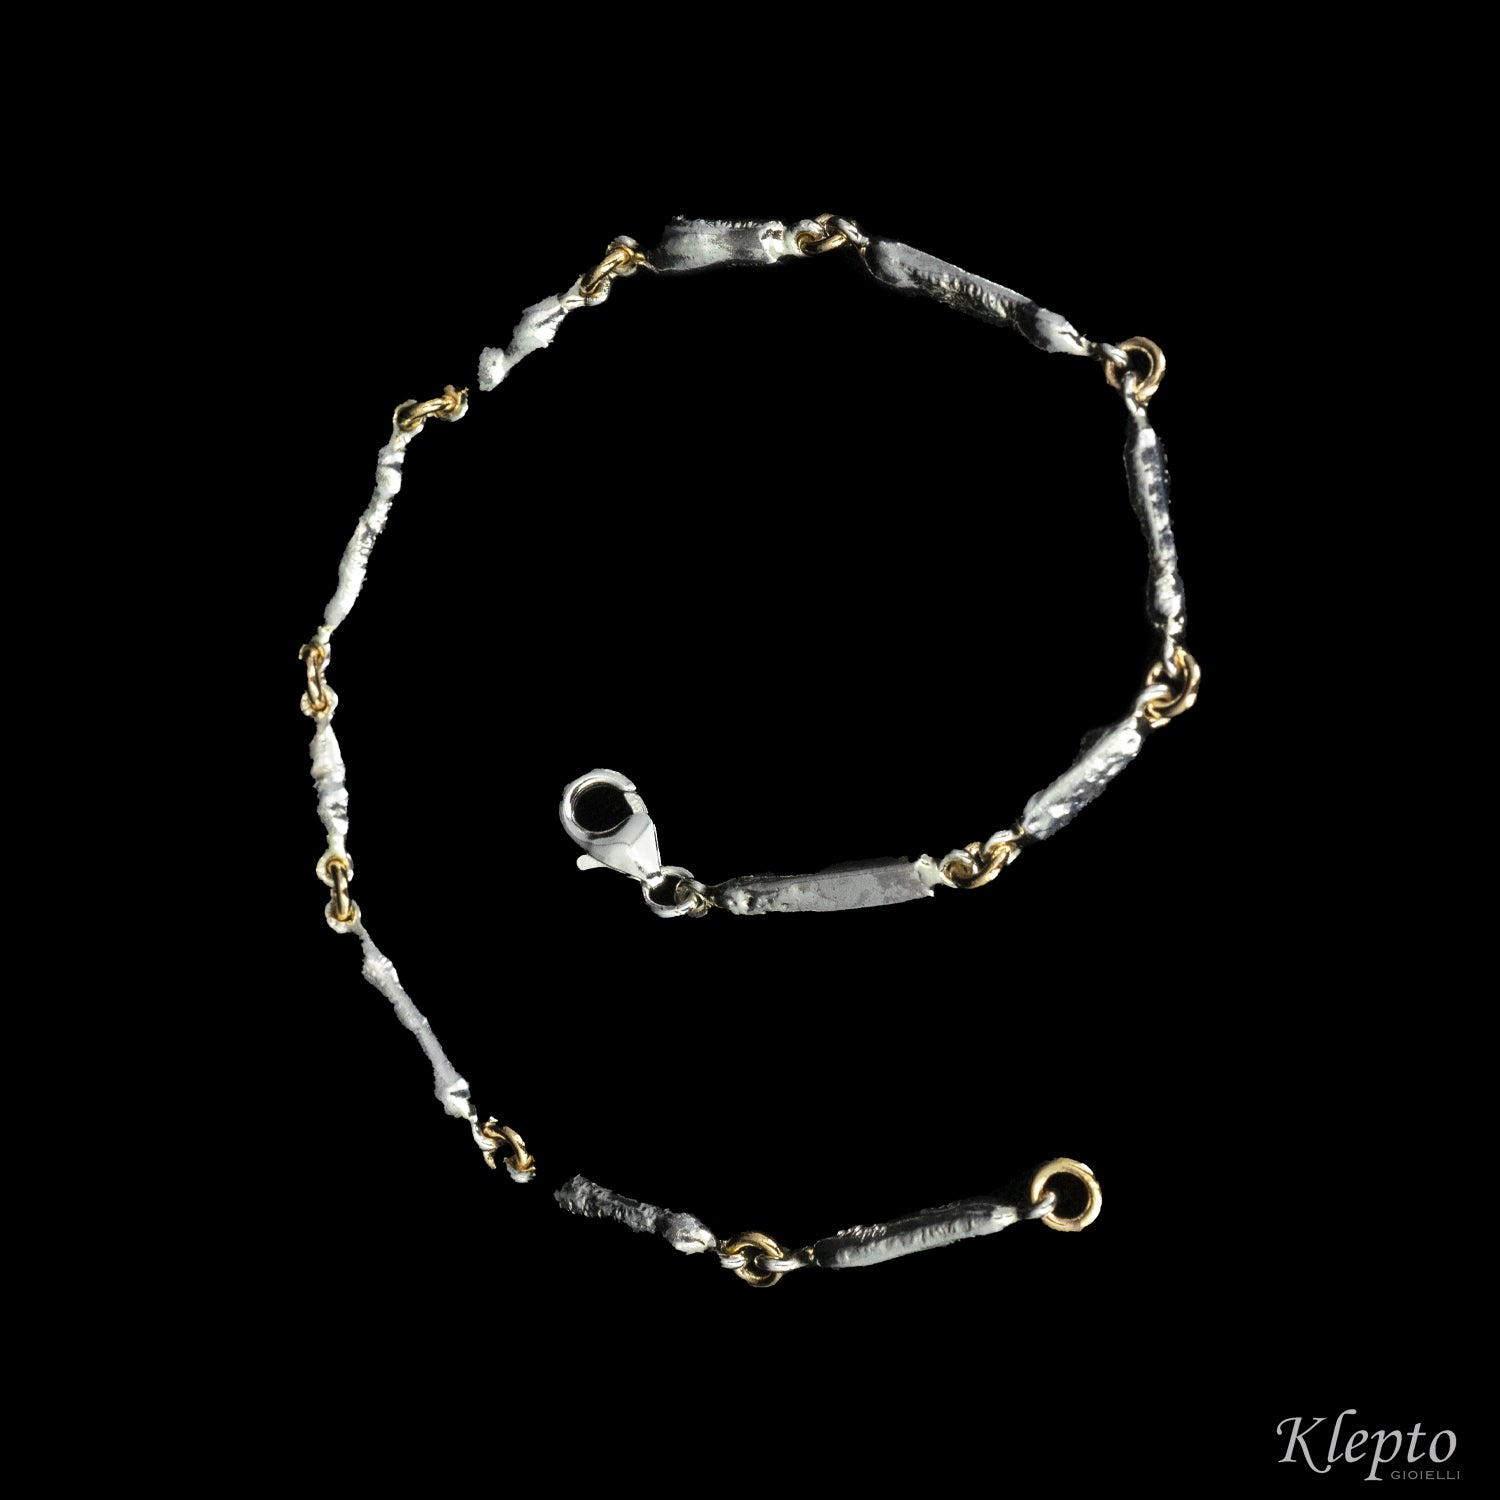 Bracelet in Silnova® Silver and Rose Gold